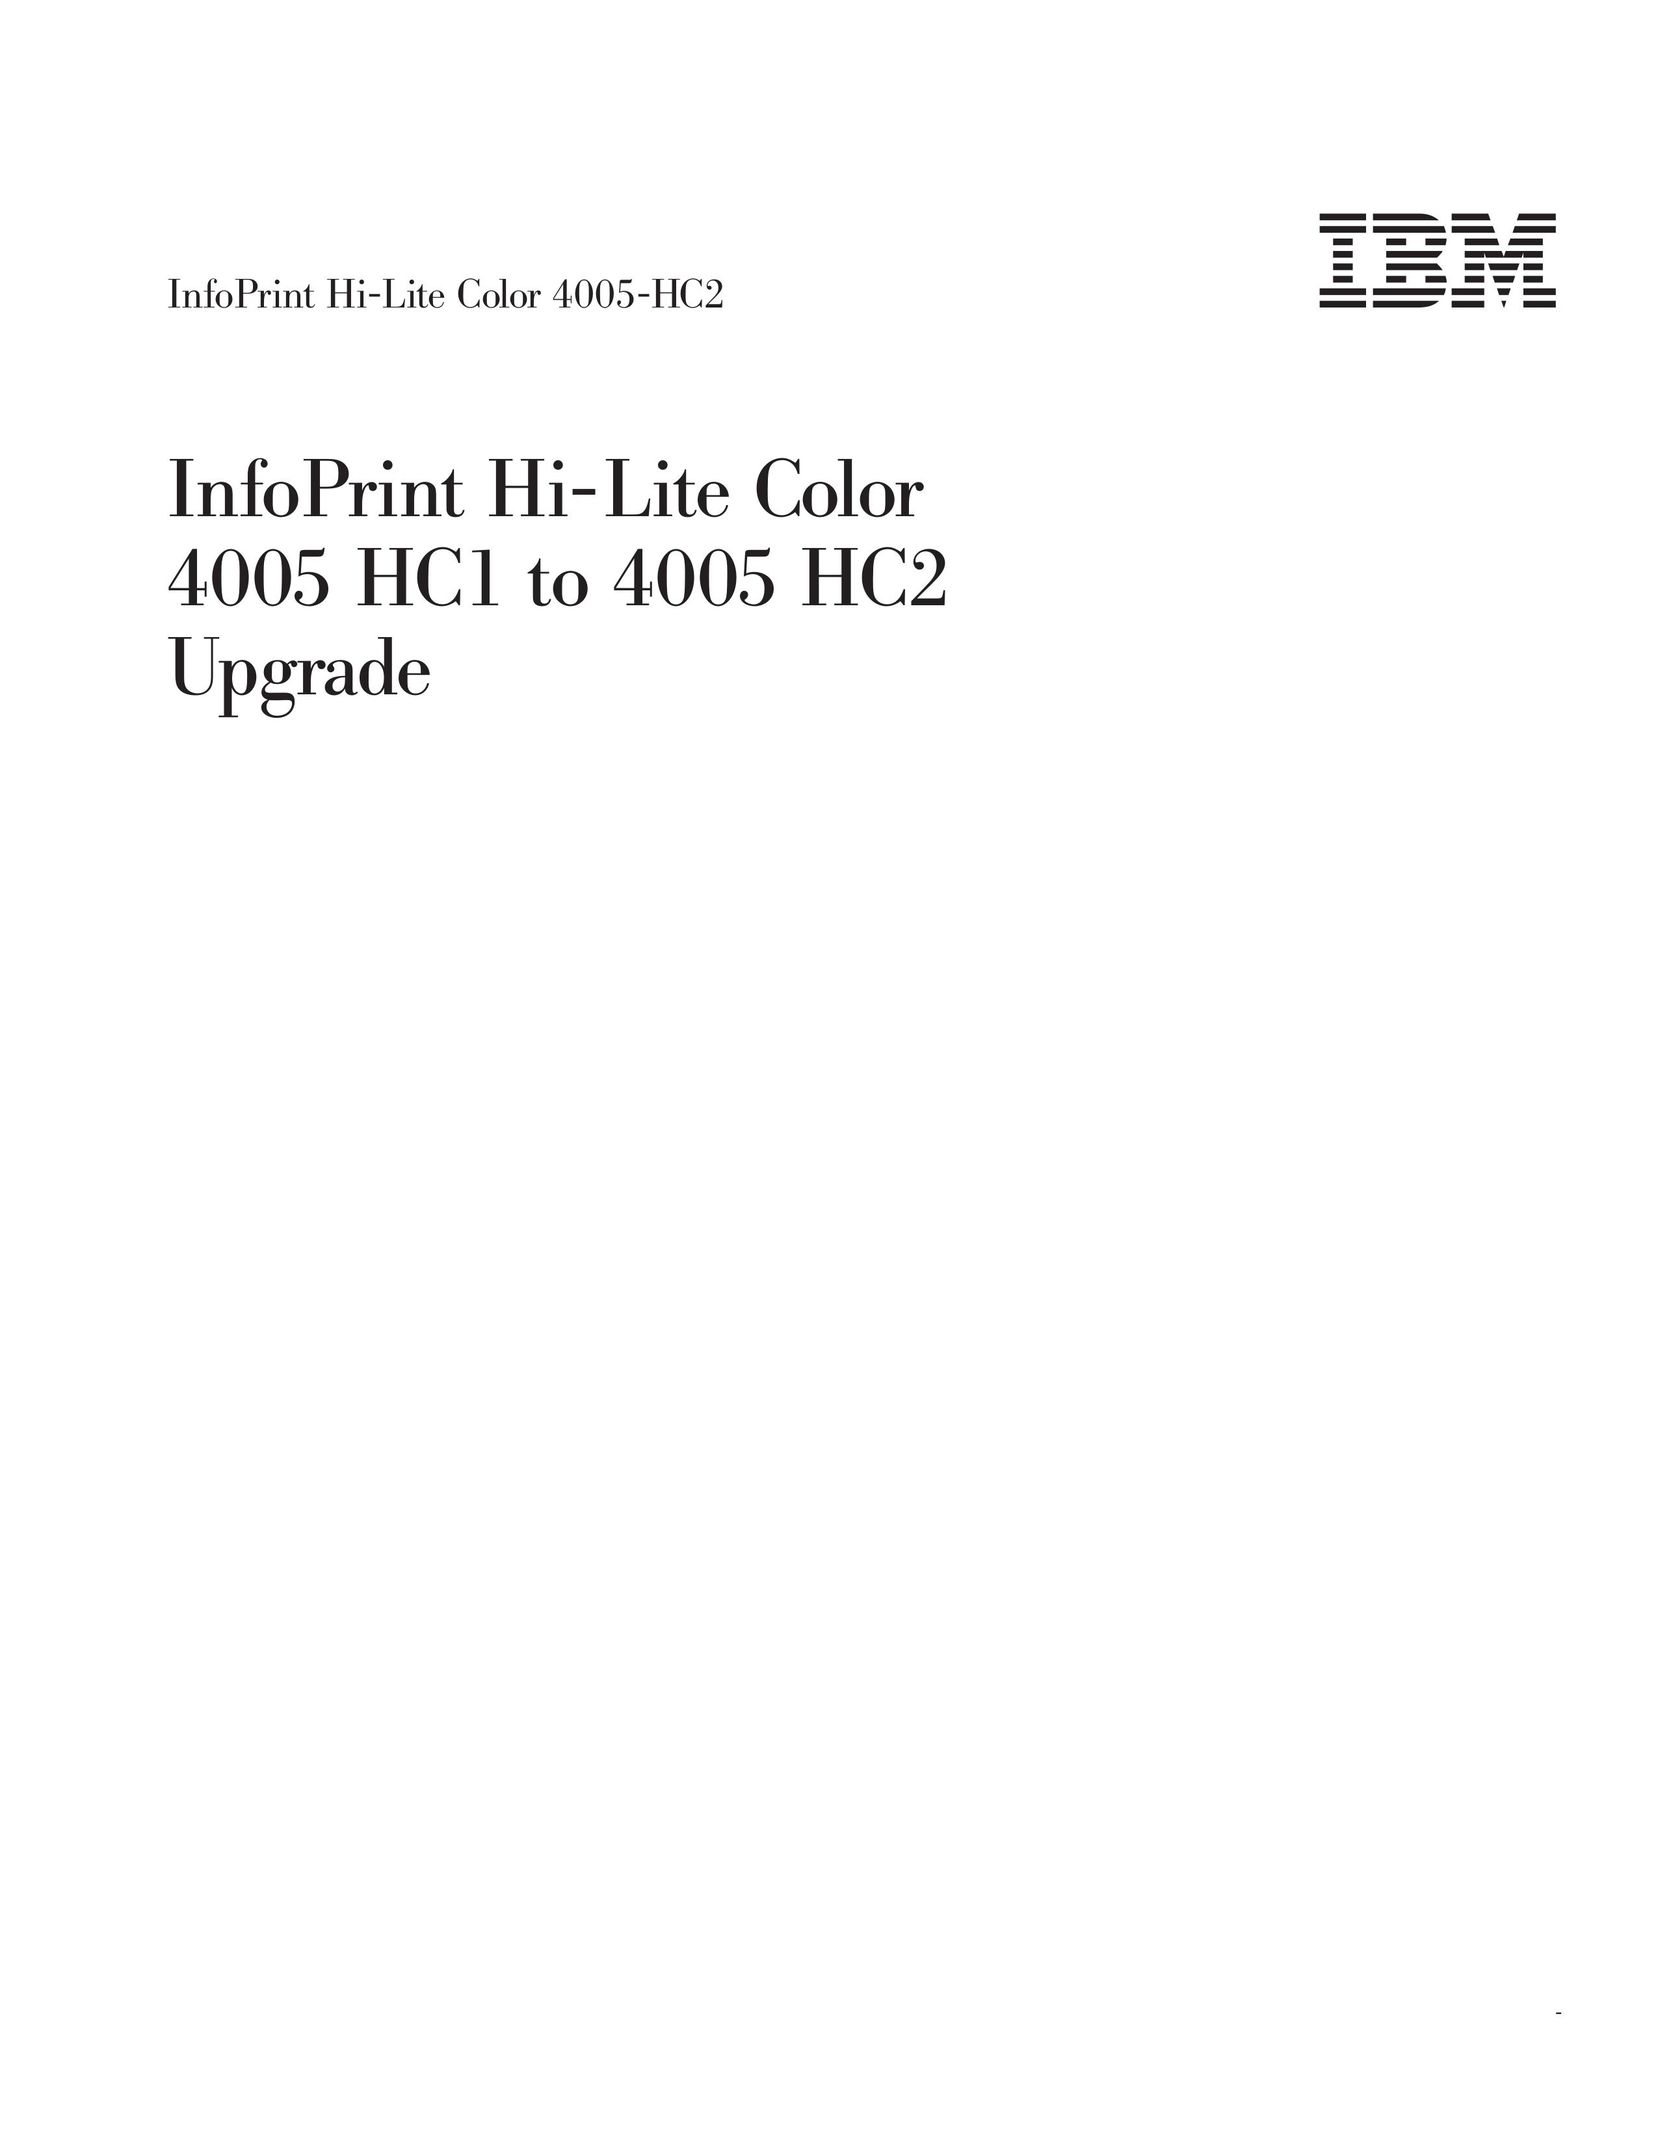 IBM 4005-HC2 Printer User Manual